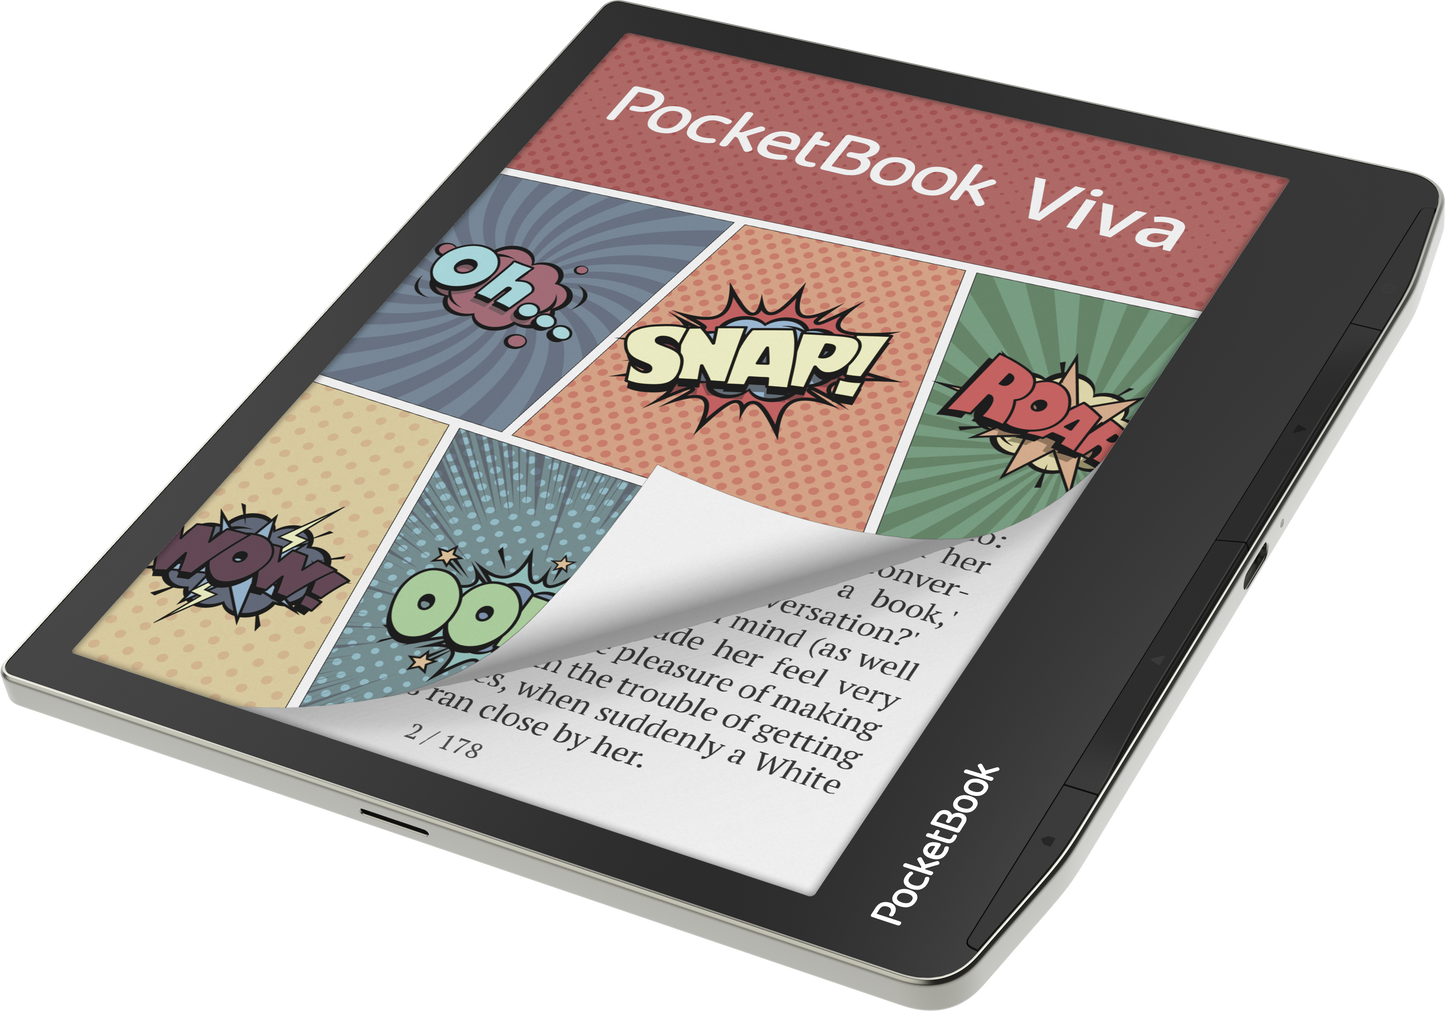 Pocketbook Viva E-Reader